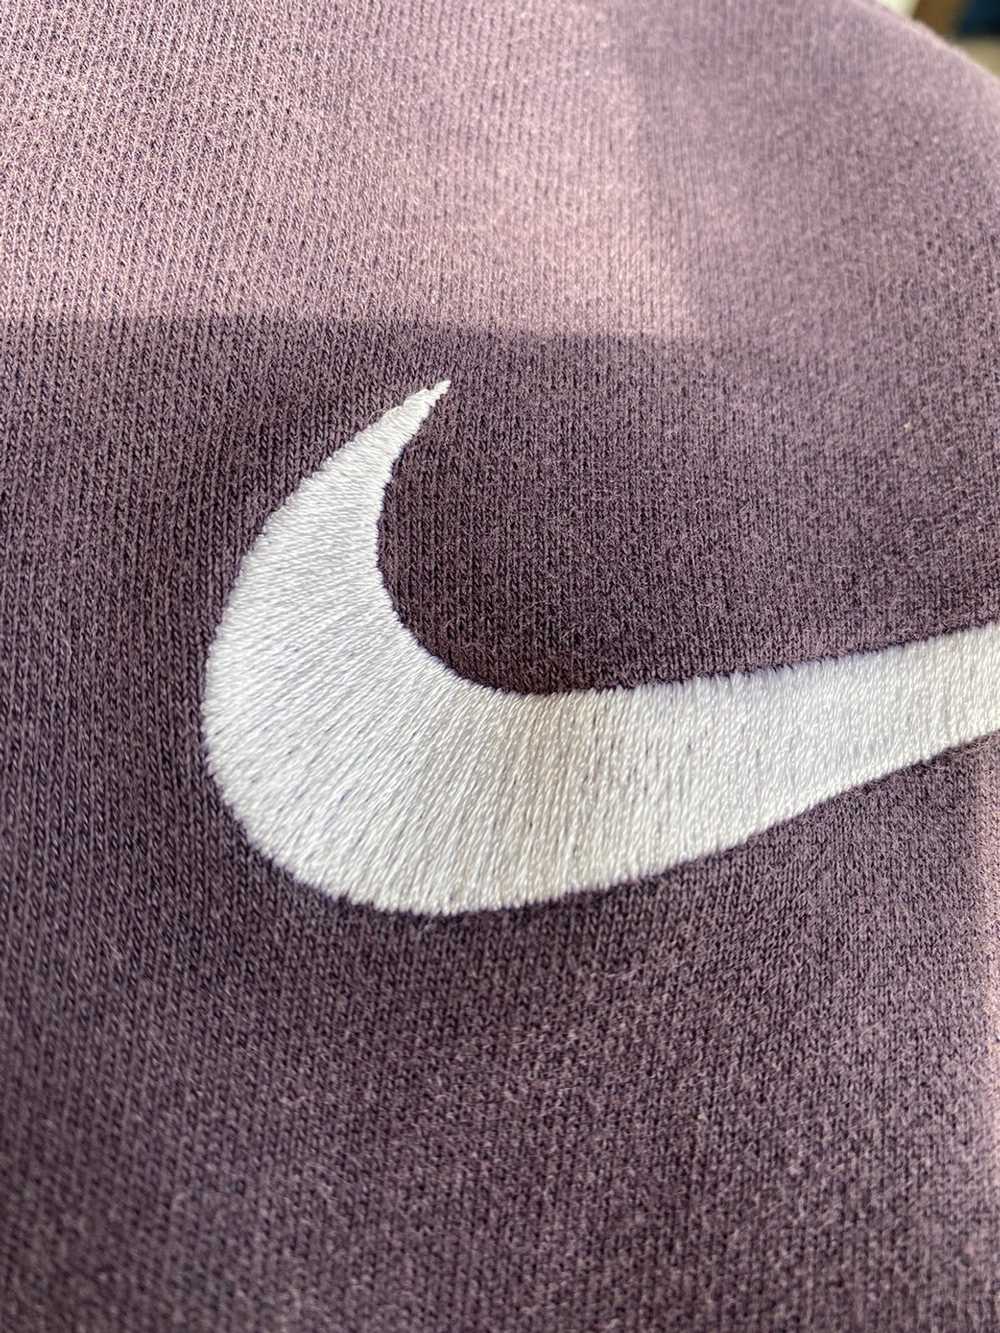 Nike Sweatshirt NIKE very nice faded - image 3